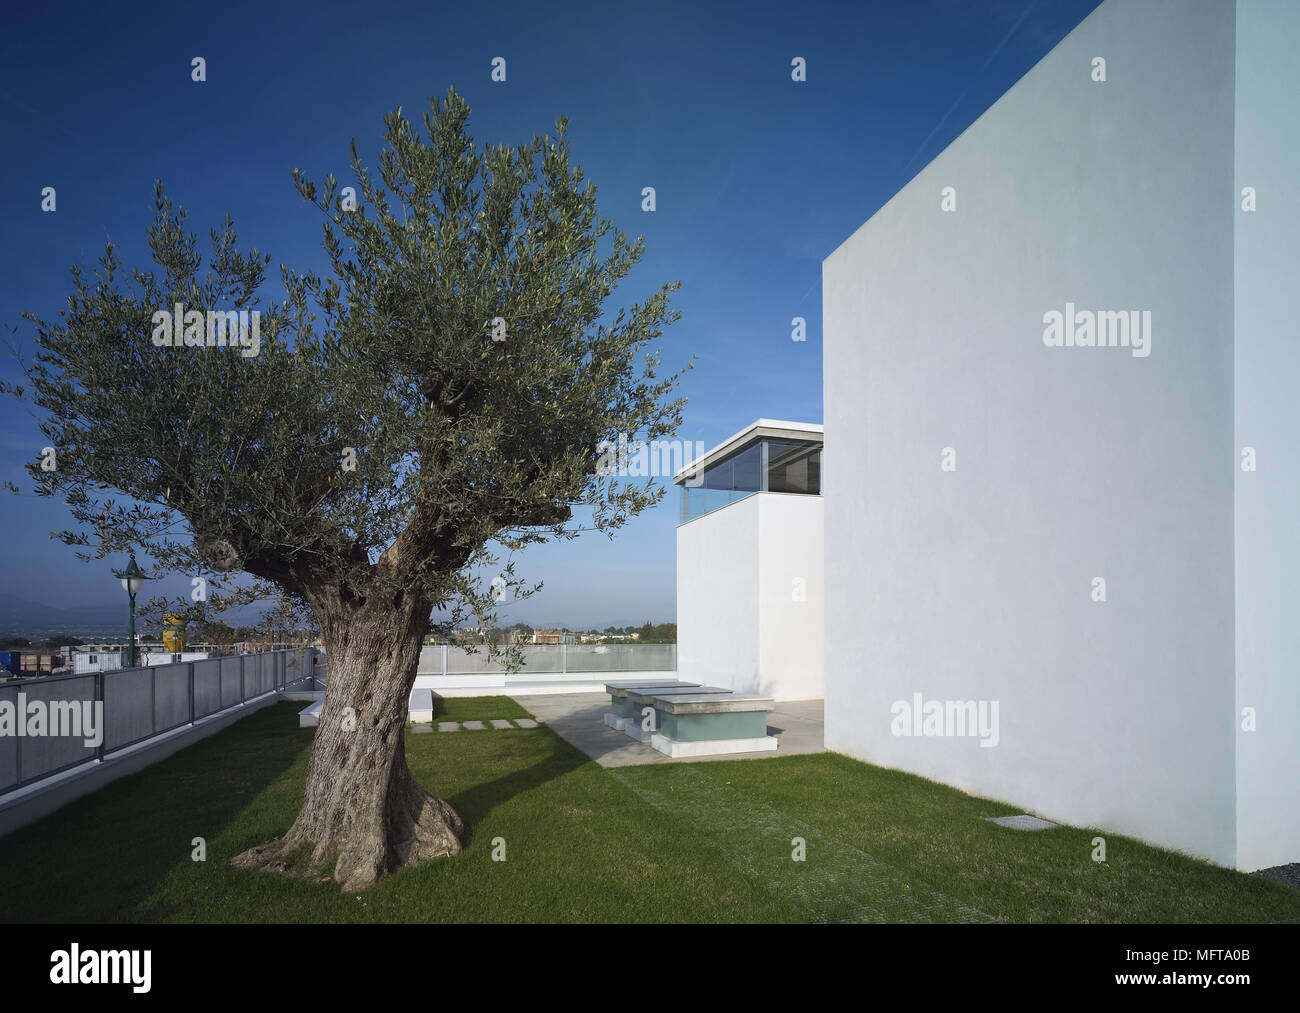 Exterior de la casa moderna con jardín minimalista Foto de stock